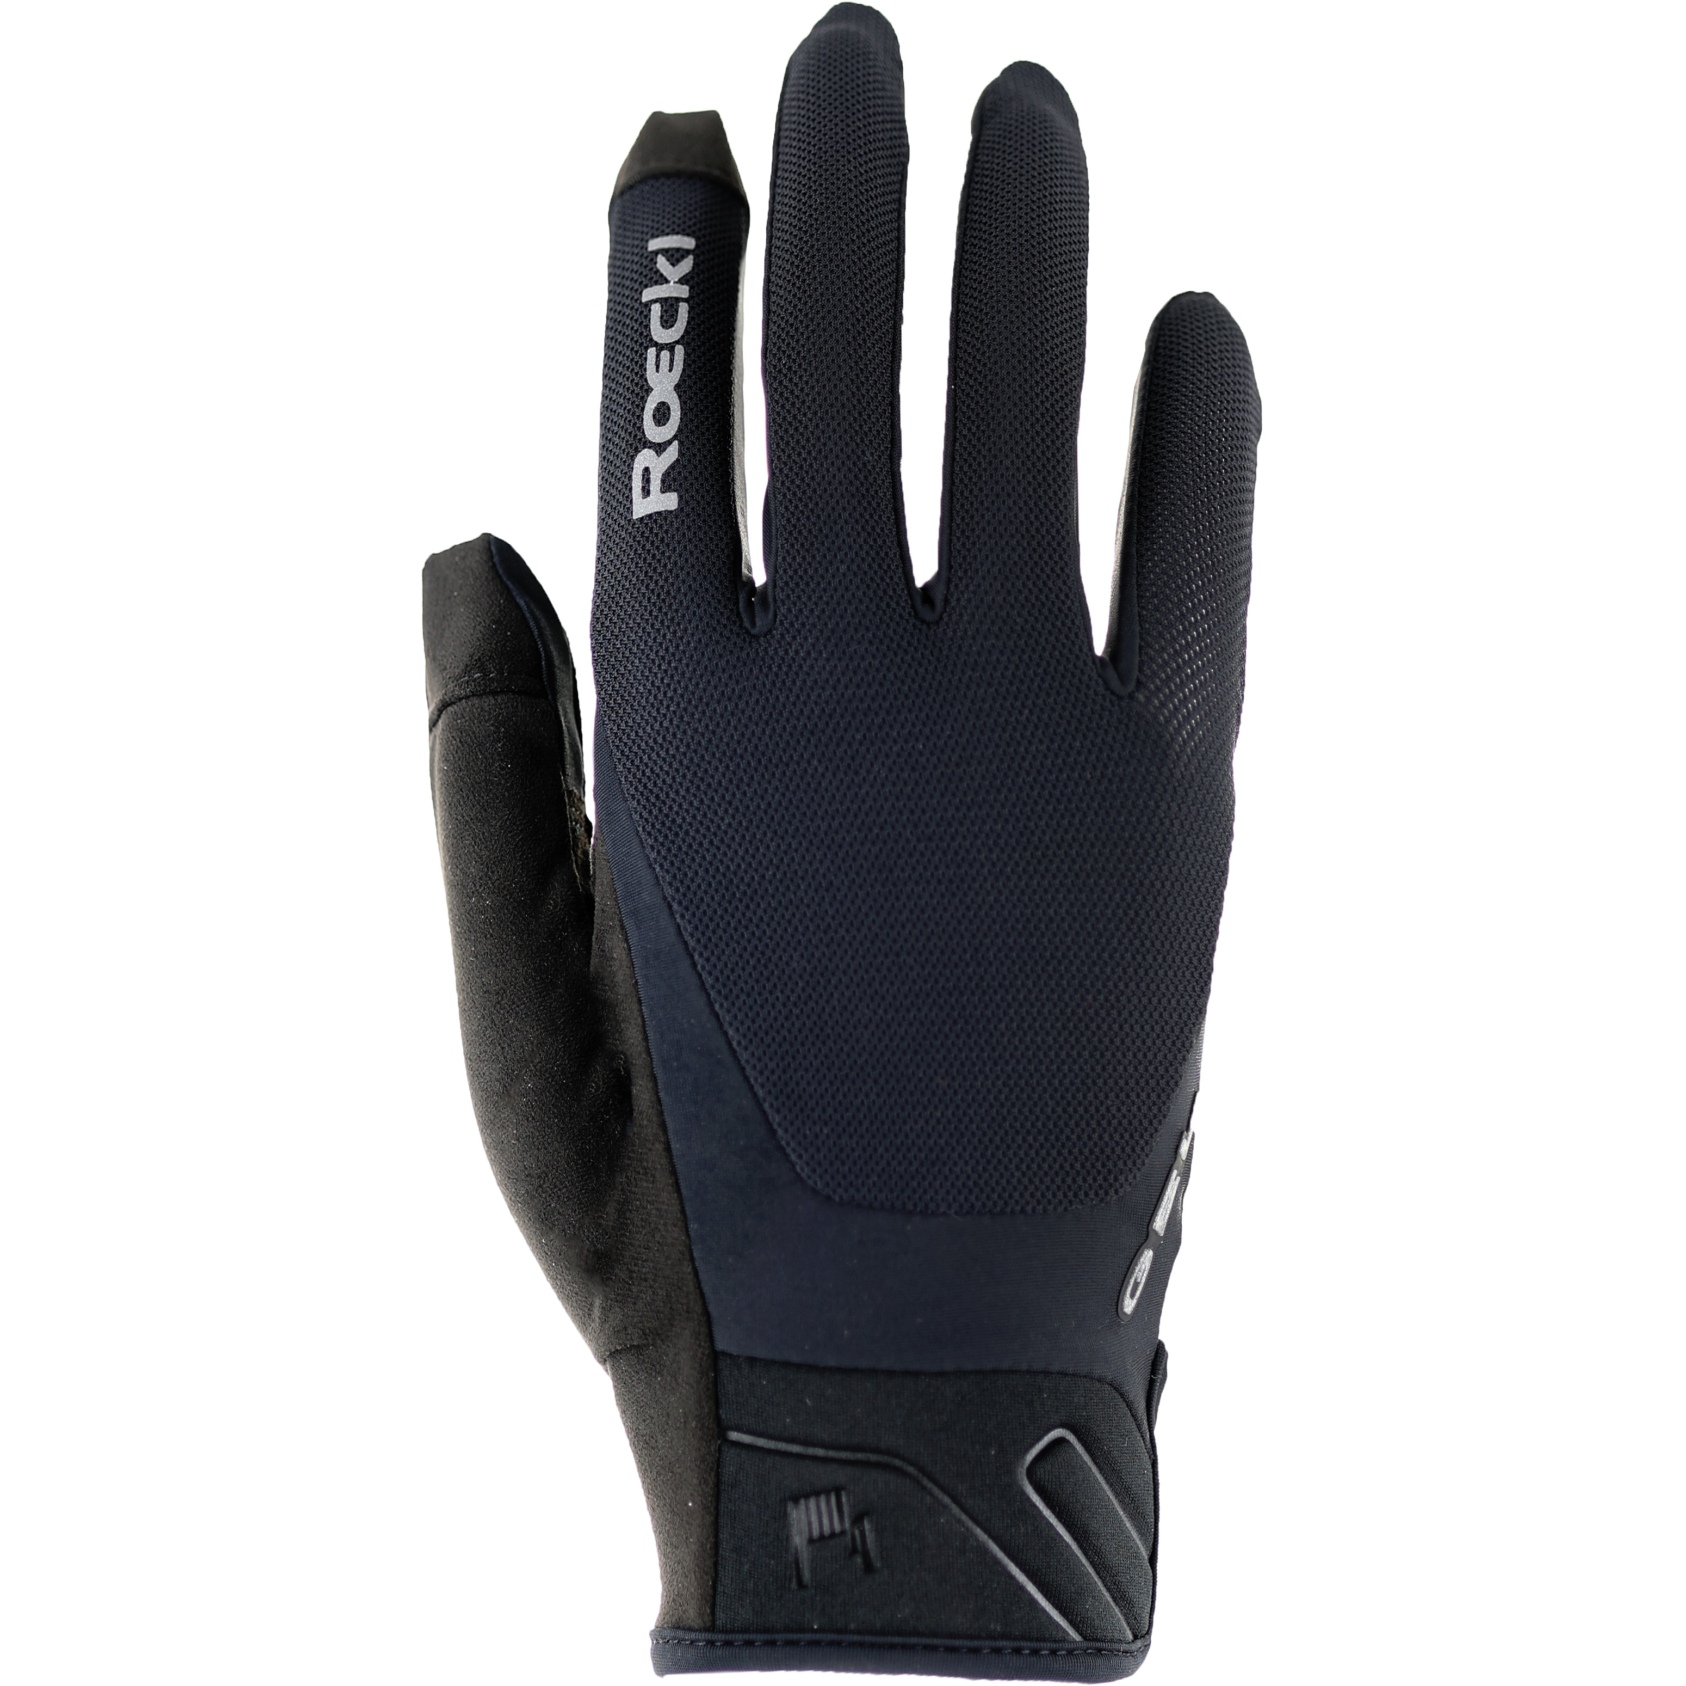 Productfoto van Roeckl Sports Mori 2 Fietshandschoenen - zwart 9000